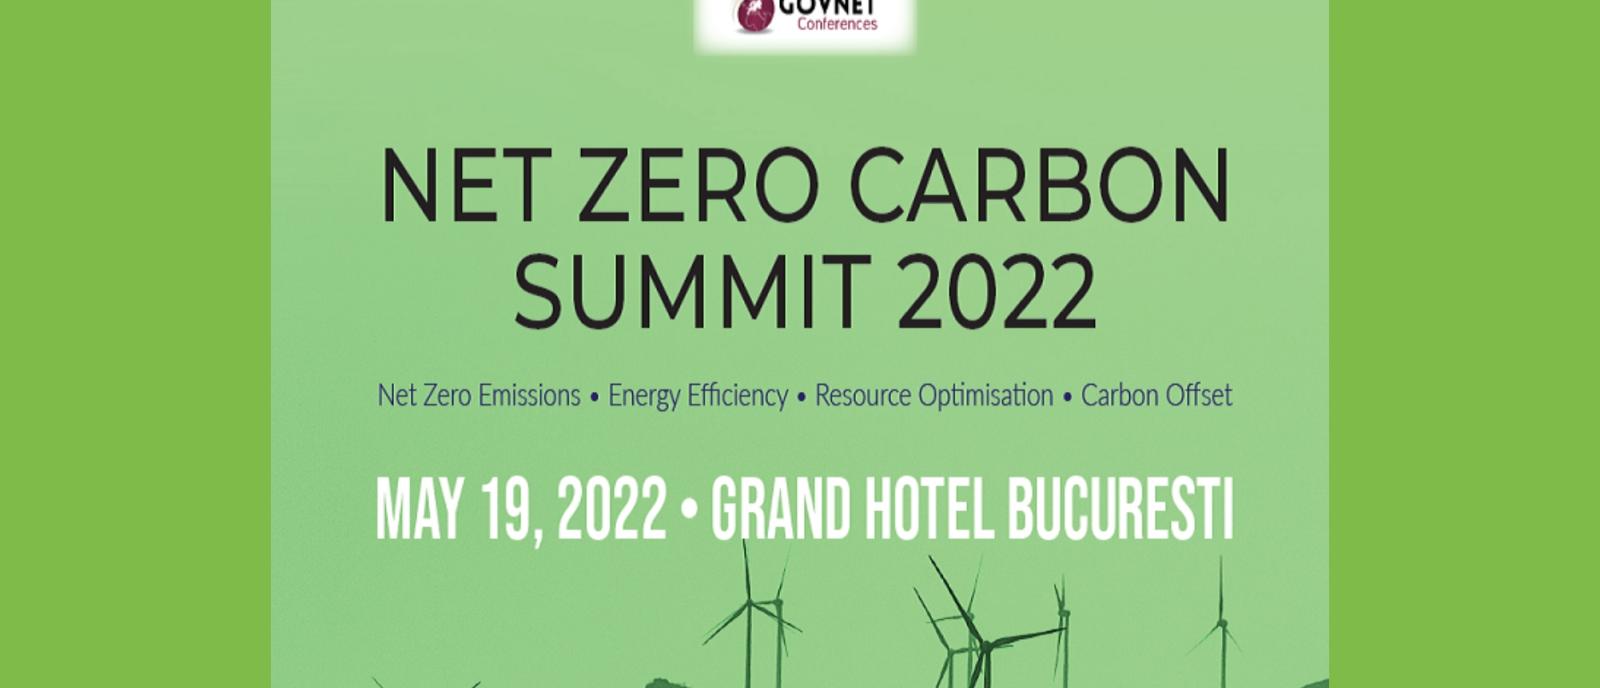 Net Zero Carbon Summit 2022